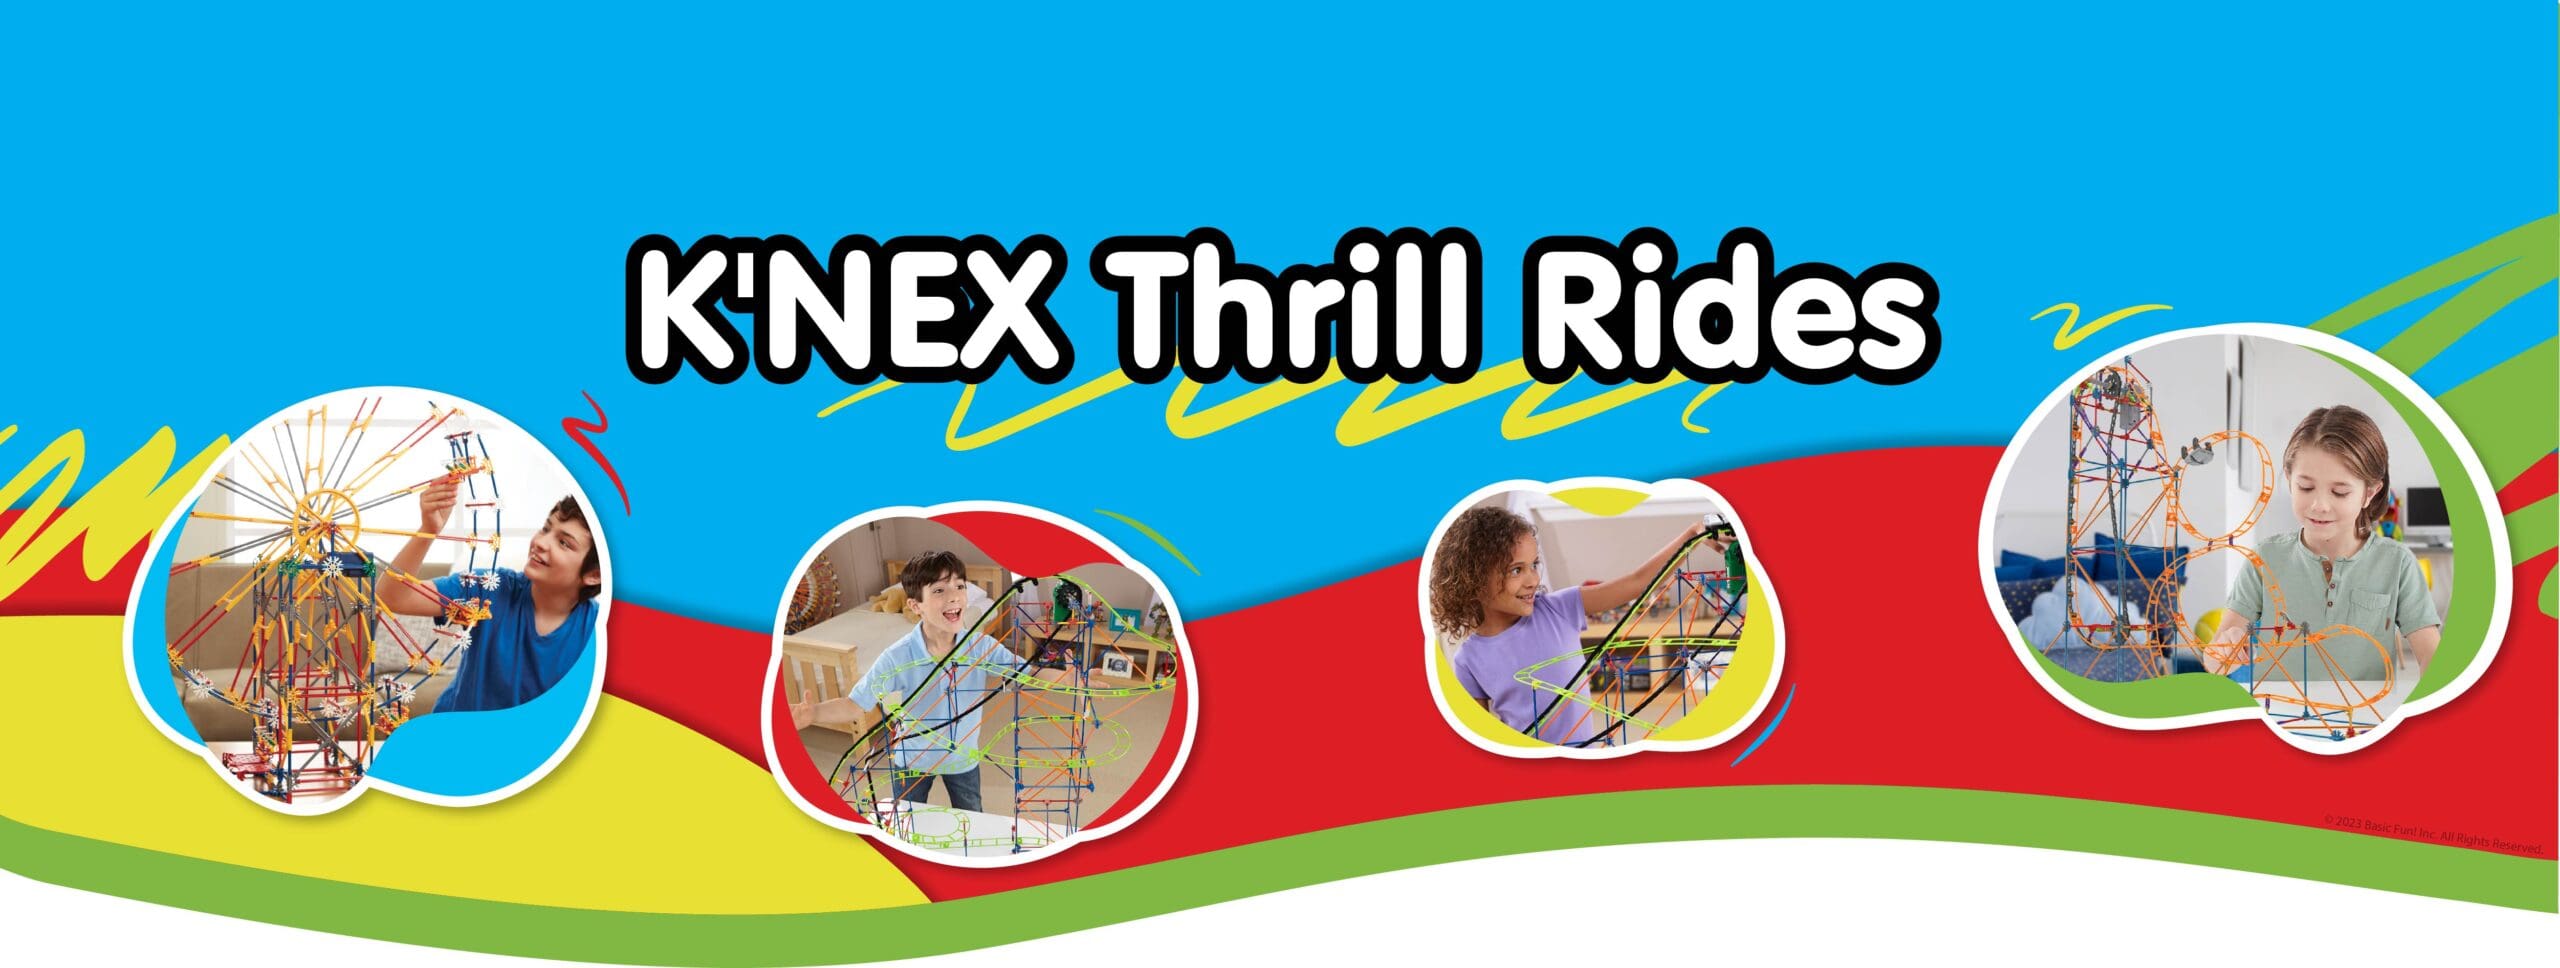 K'NEX Thrill Rides Banner